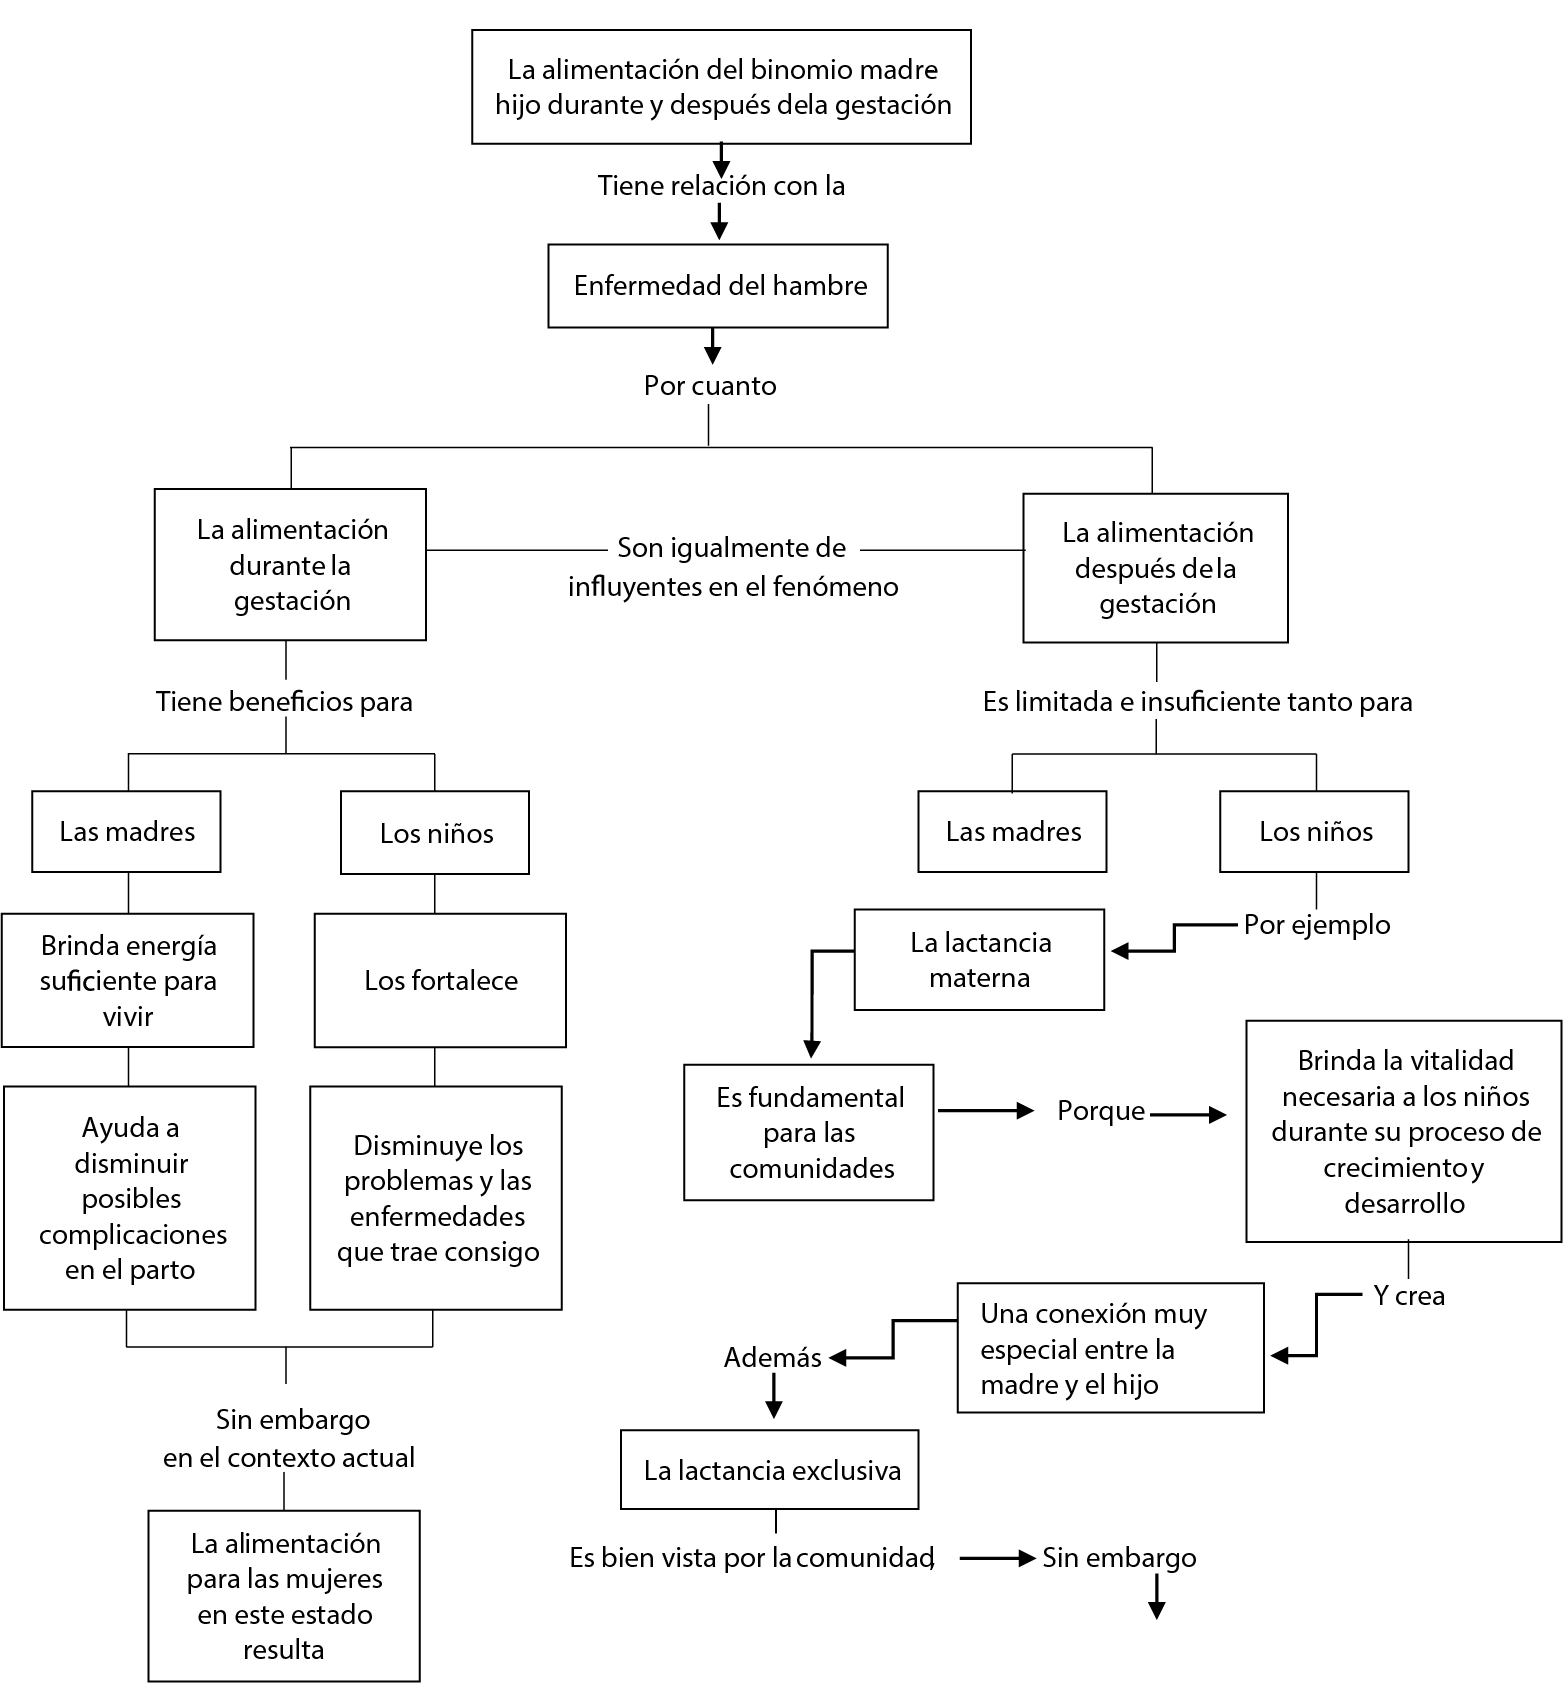 Mapa conceptual de la categoría analítica “la enfermedad del hambre: su relación con la alimentación del binomio madre-hijo, durante la gestación y después de esta”